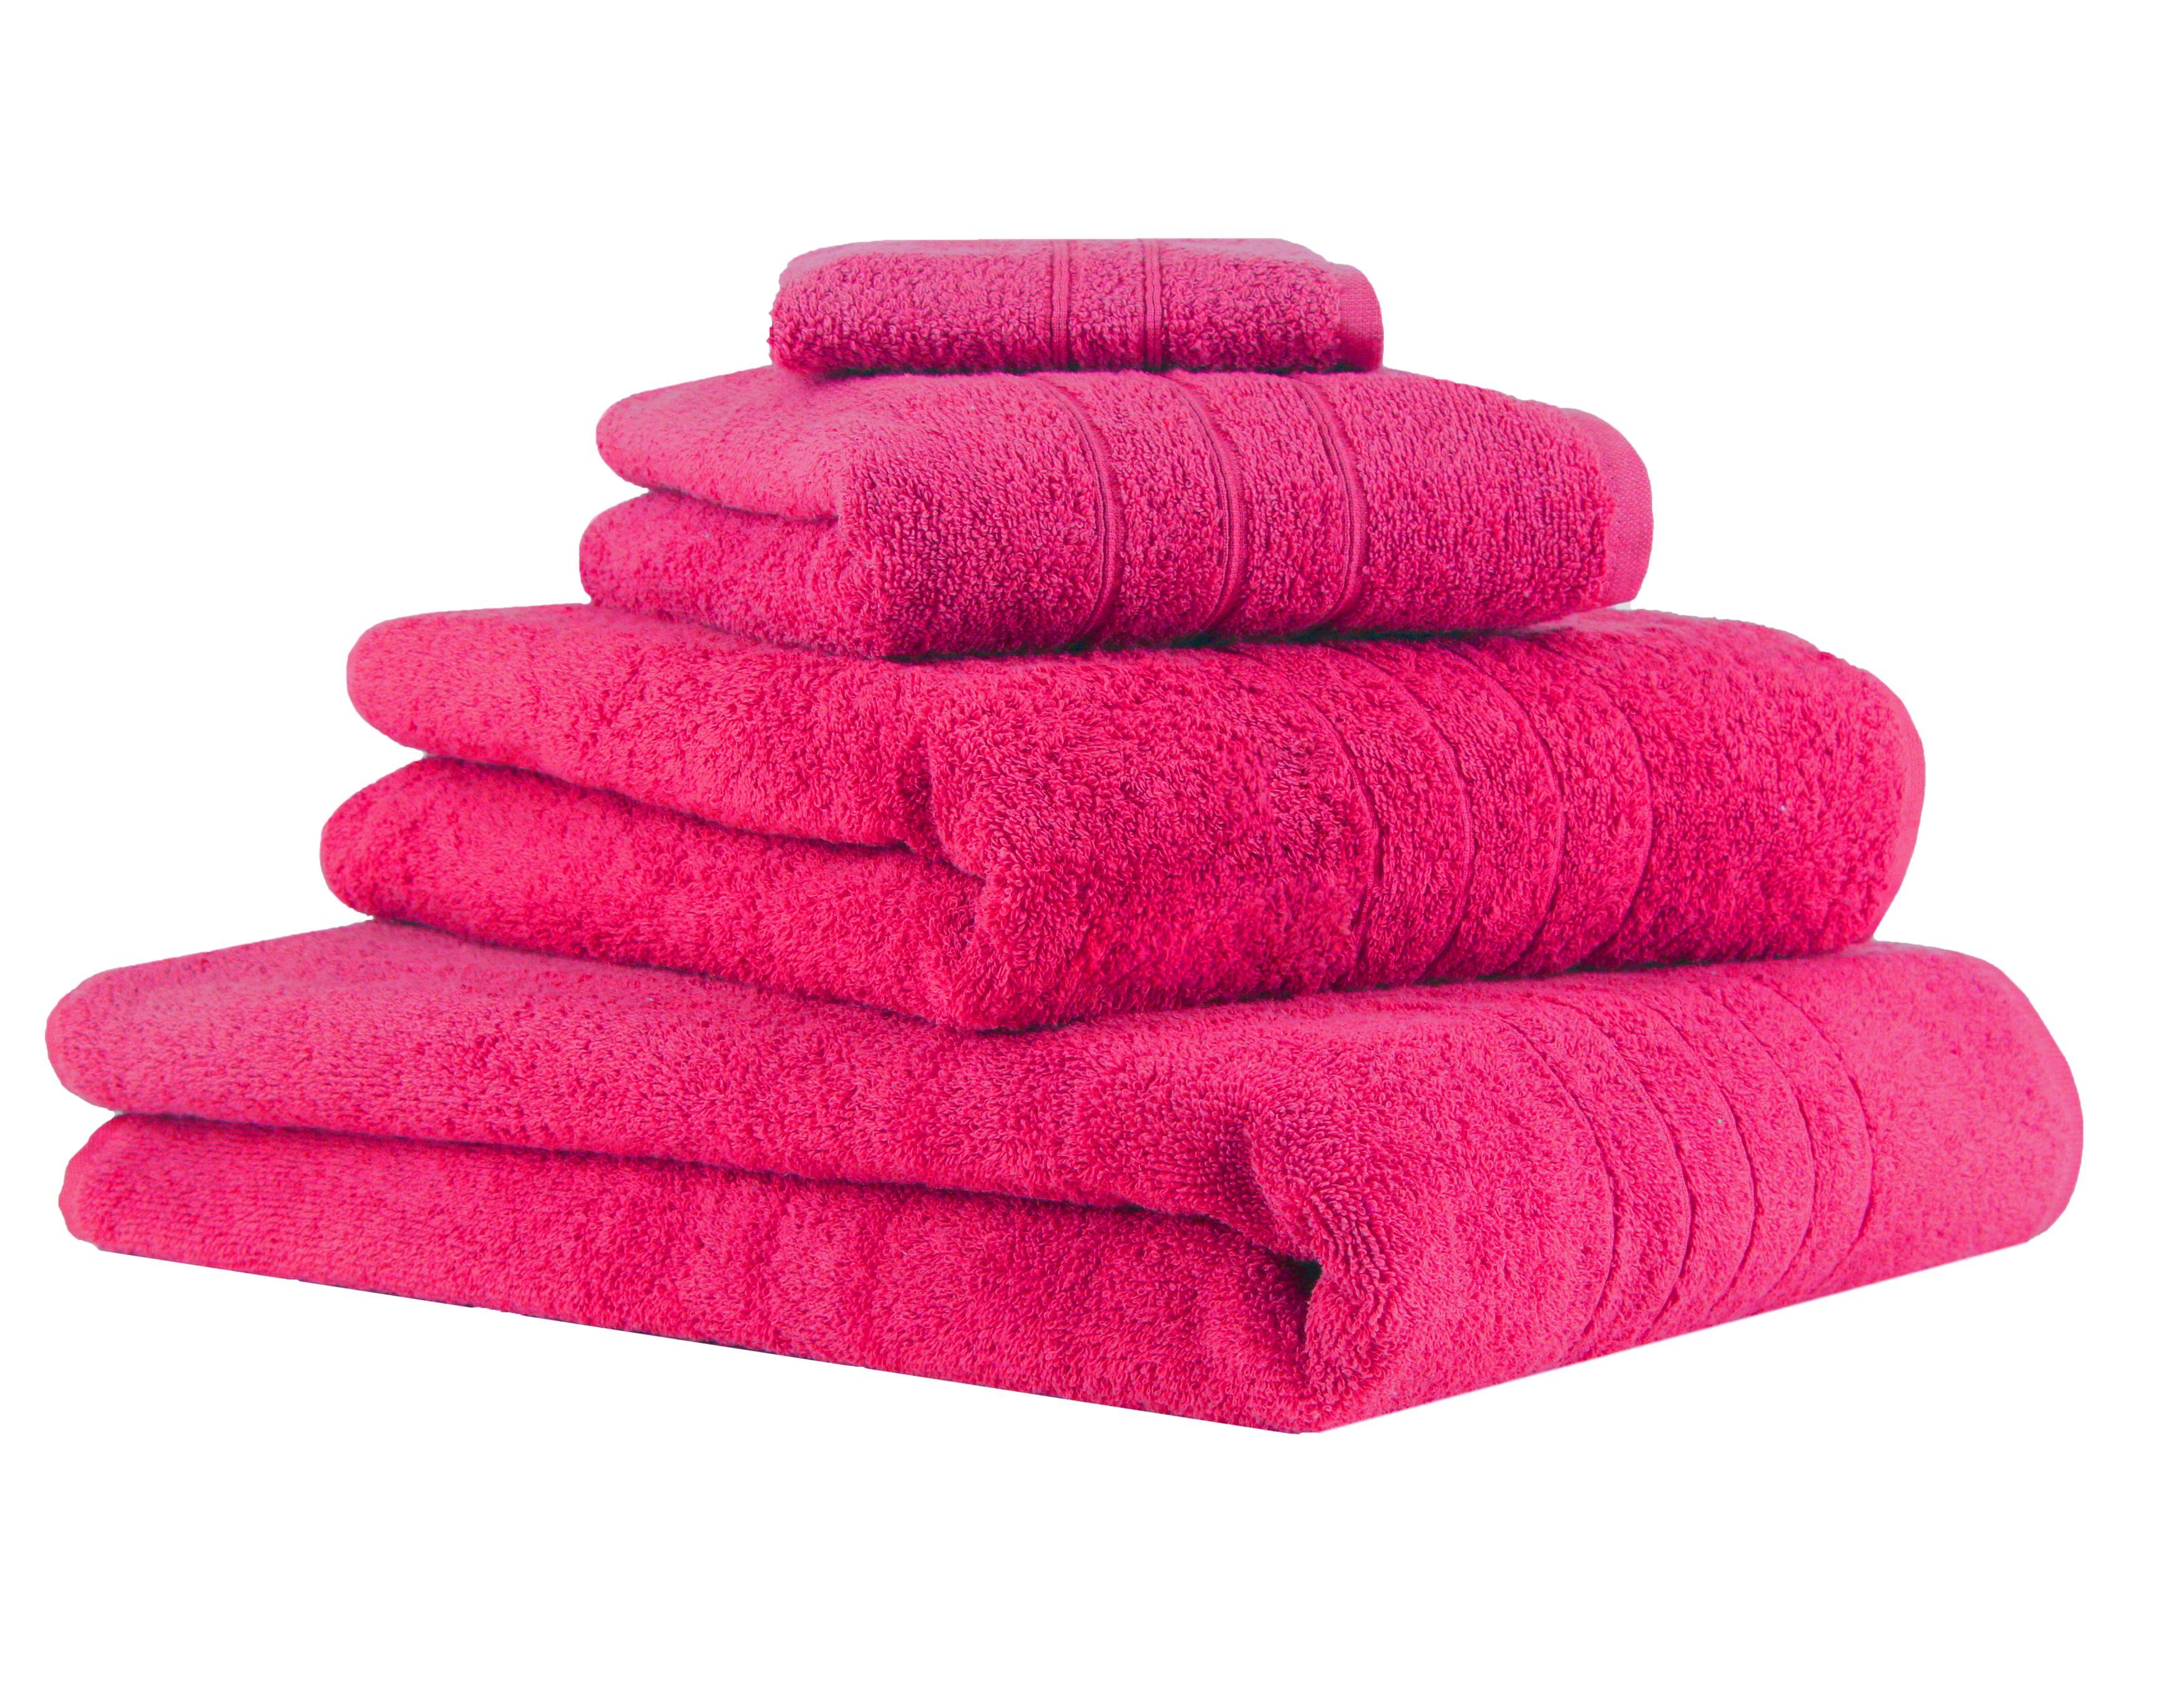 Betz Handtuch Set 4-TLG. Handtuch-Set Deluxe 100% Baumwolle 1 Badetuch 1 Duschtuch 1 Handtuch 1 Seiftuch Farbe Fuchsia, 100% Baumwolle, (4-tlg)